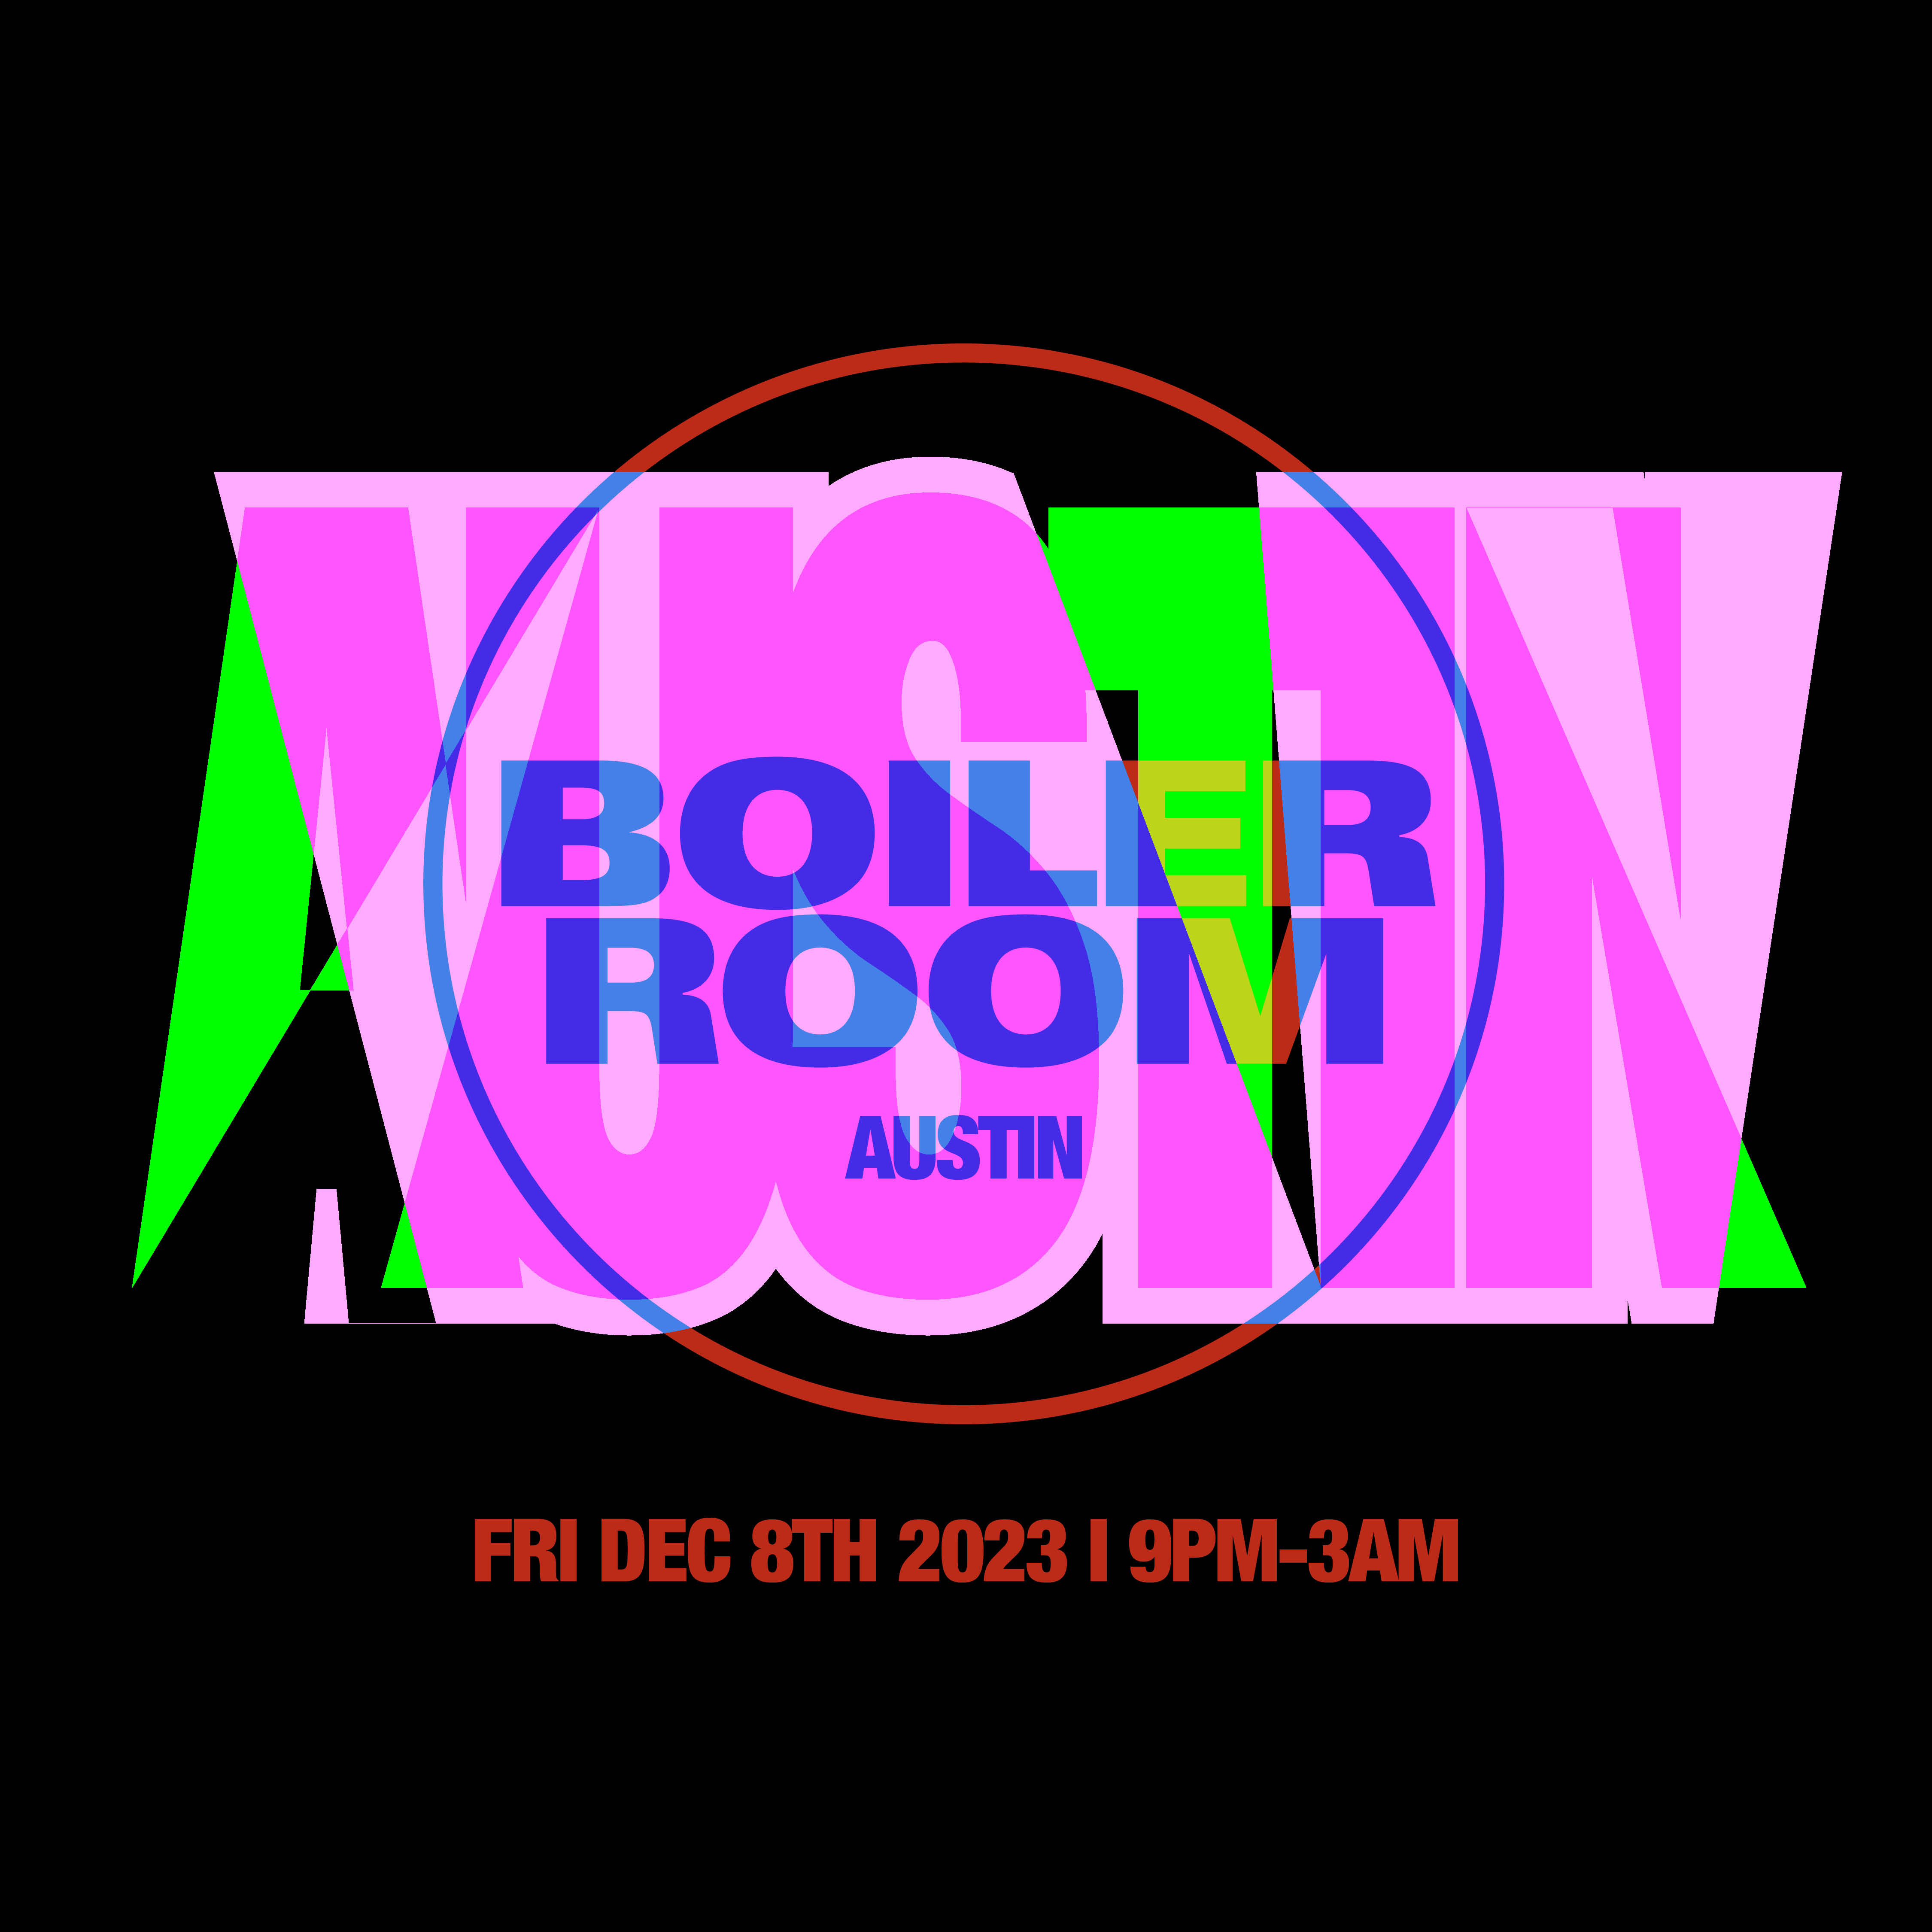 Boiler Room: Austin | Friday